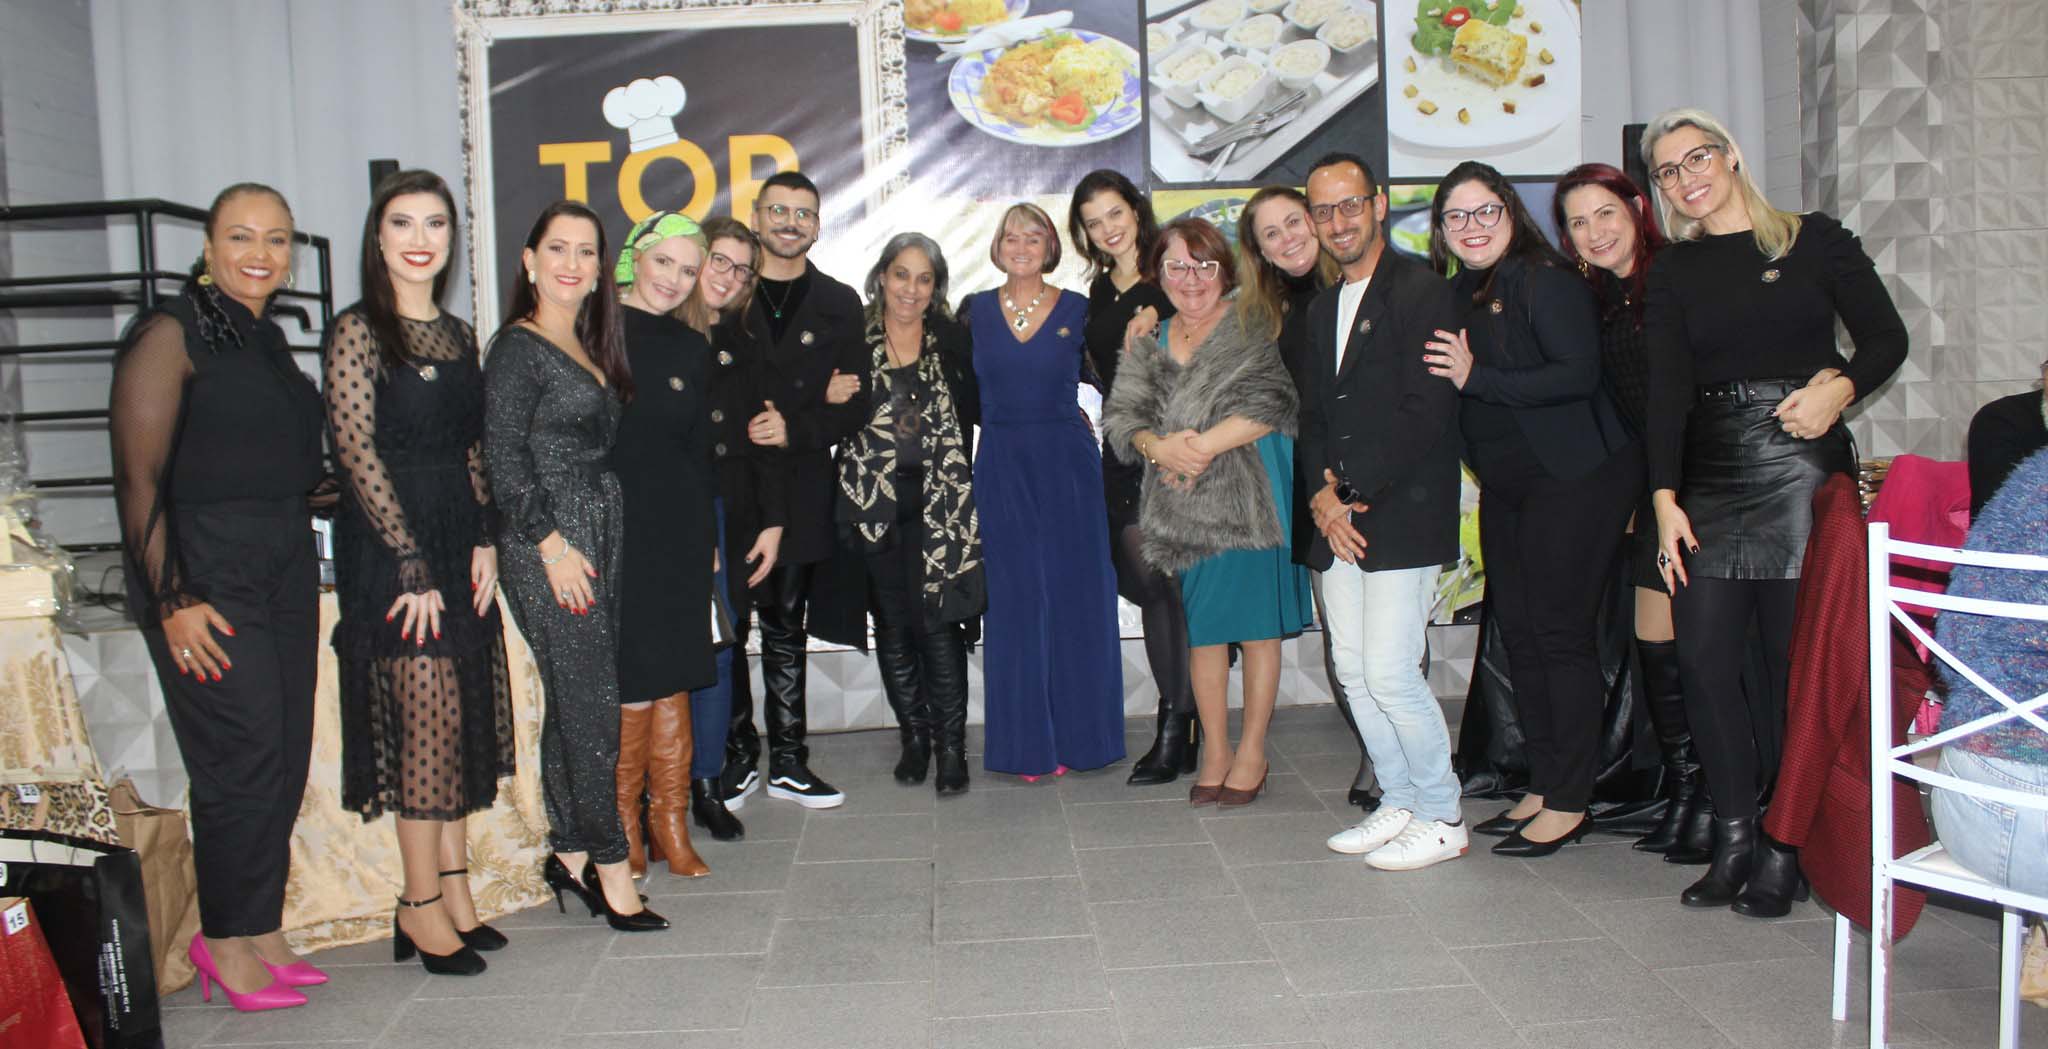 Secretaria de Educação e Cultura realiza a premiação do I Concurso de Receitas Criativas para a Alimentação Escolar TOP CHEF   